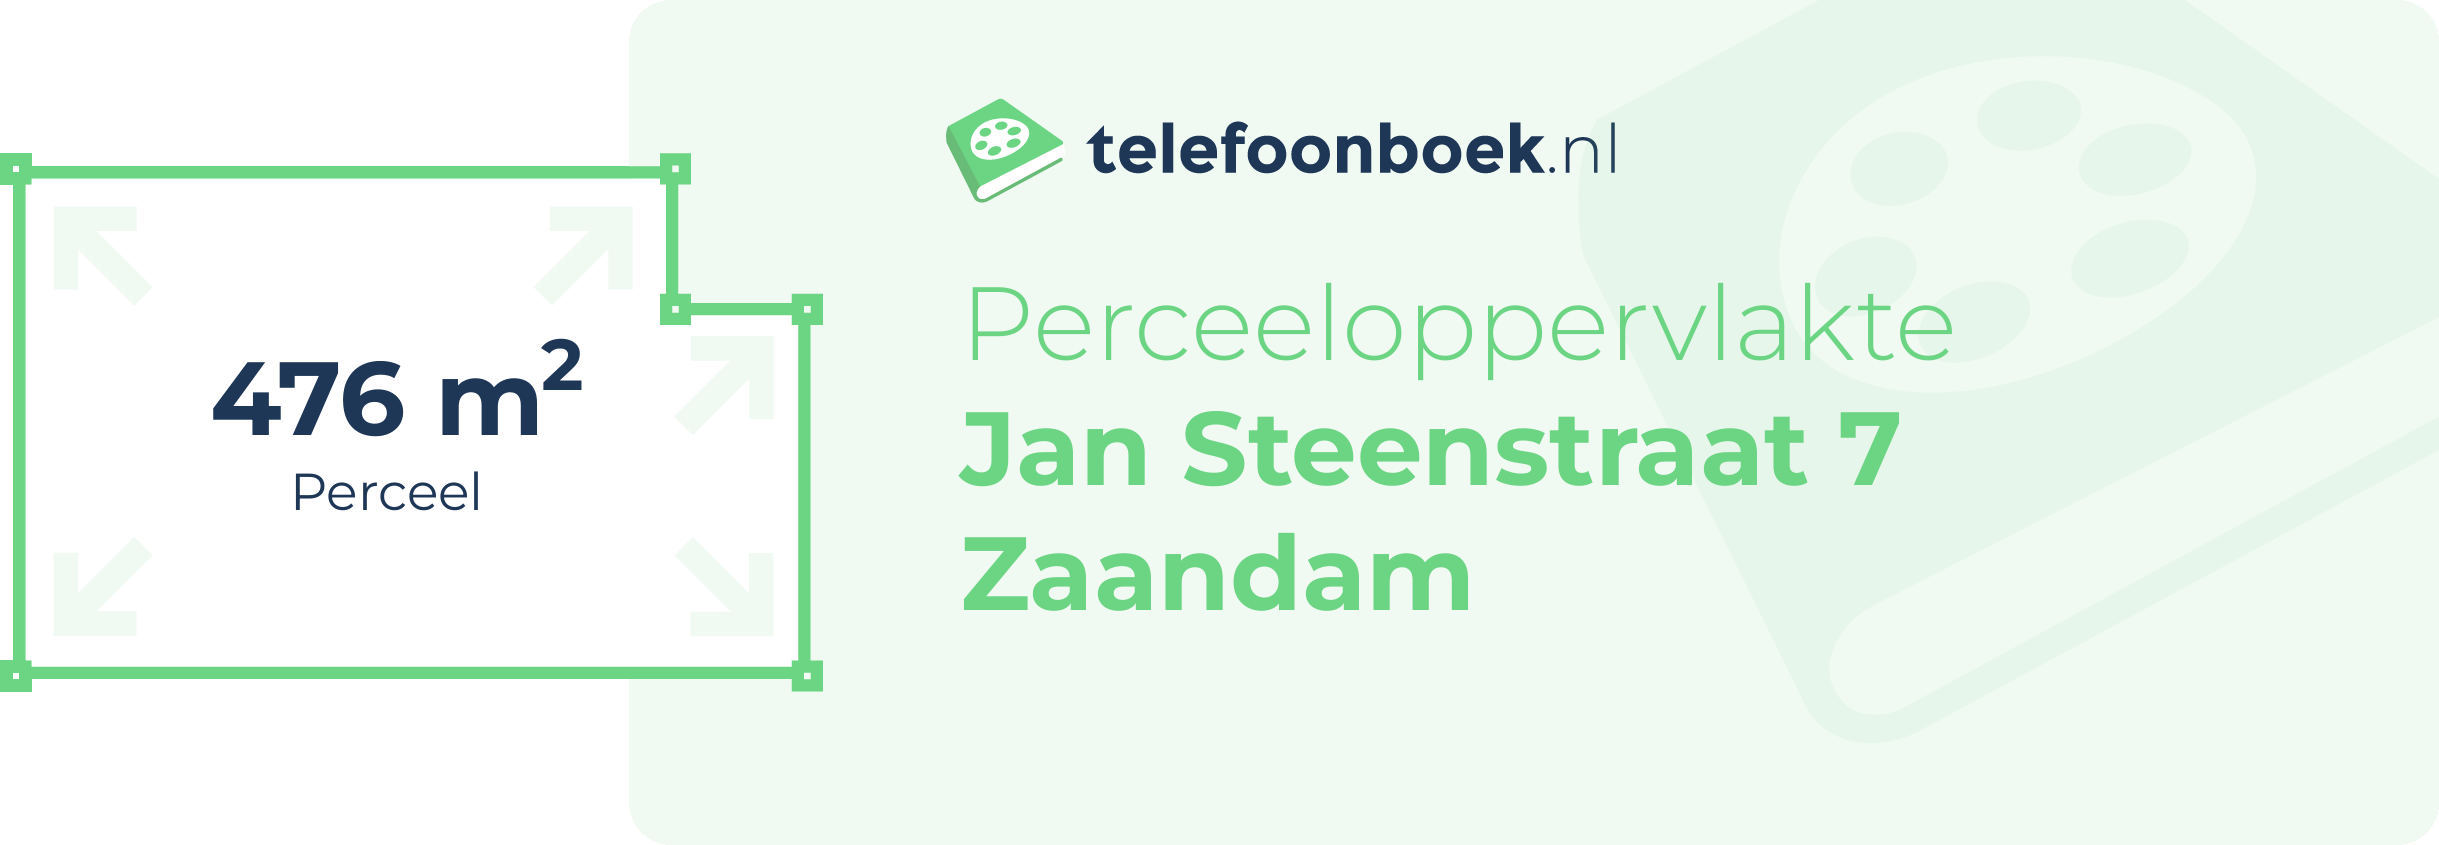 Perceeloppervlakte Jan Steenstraat 7 Zaandam